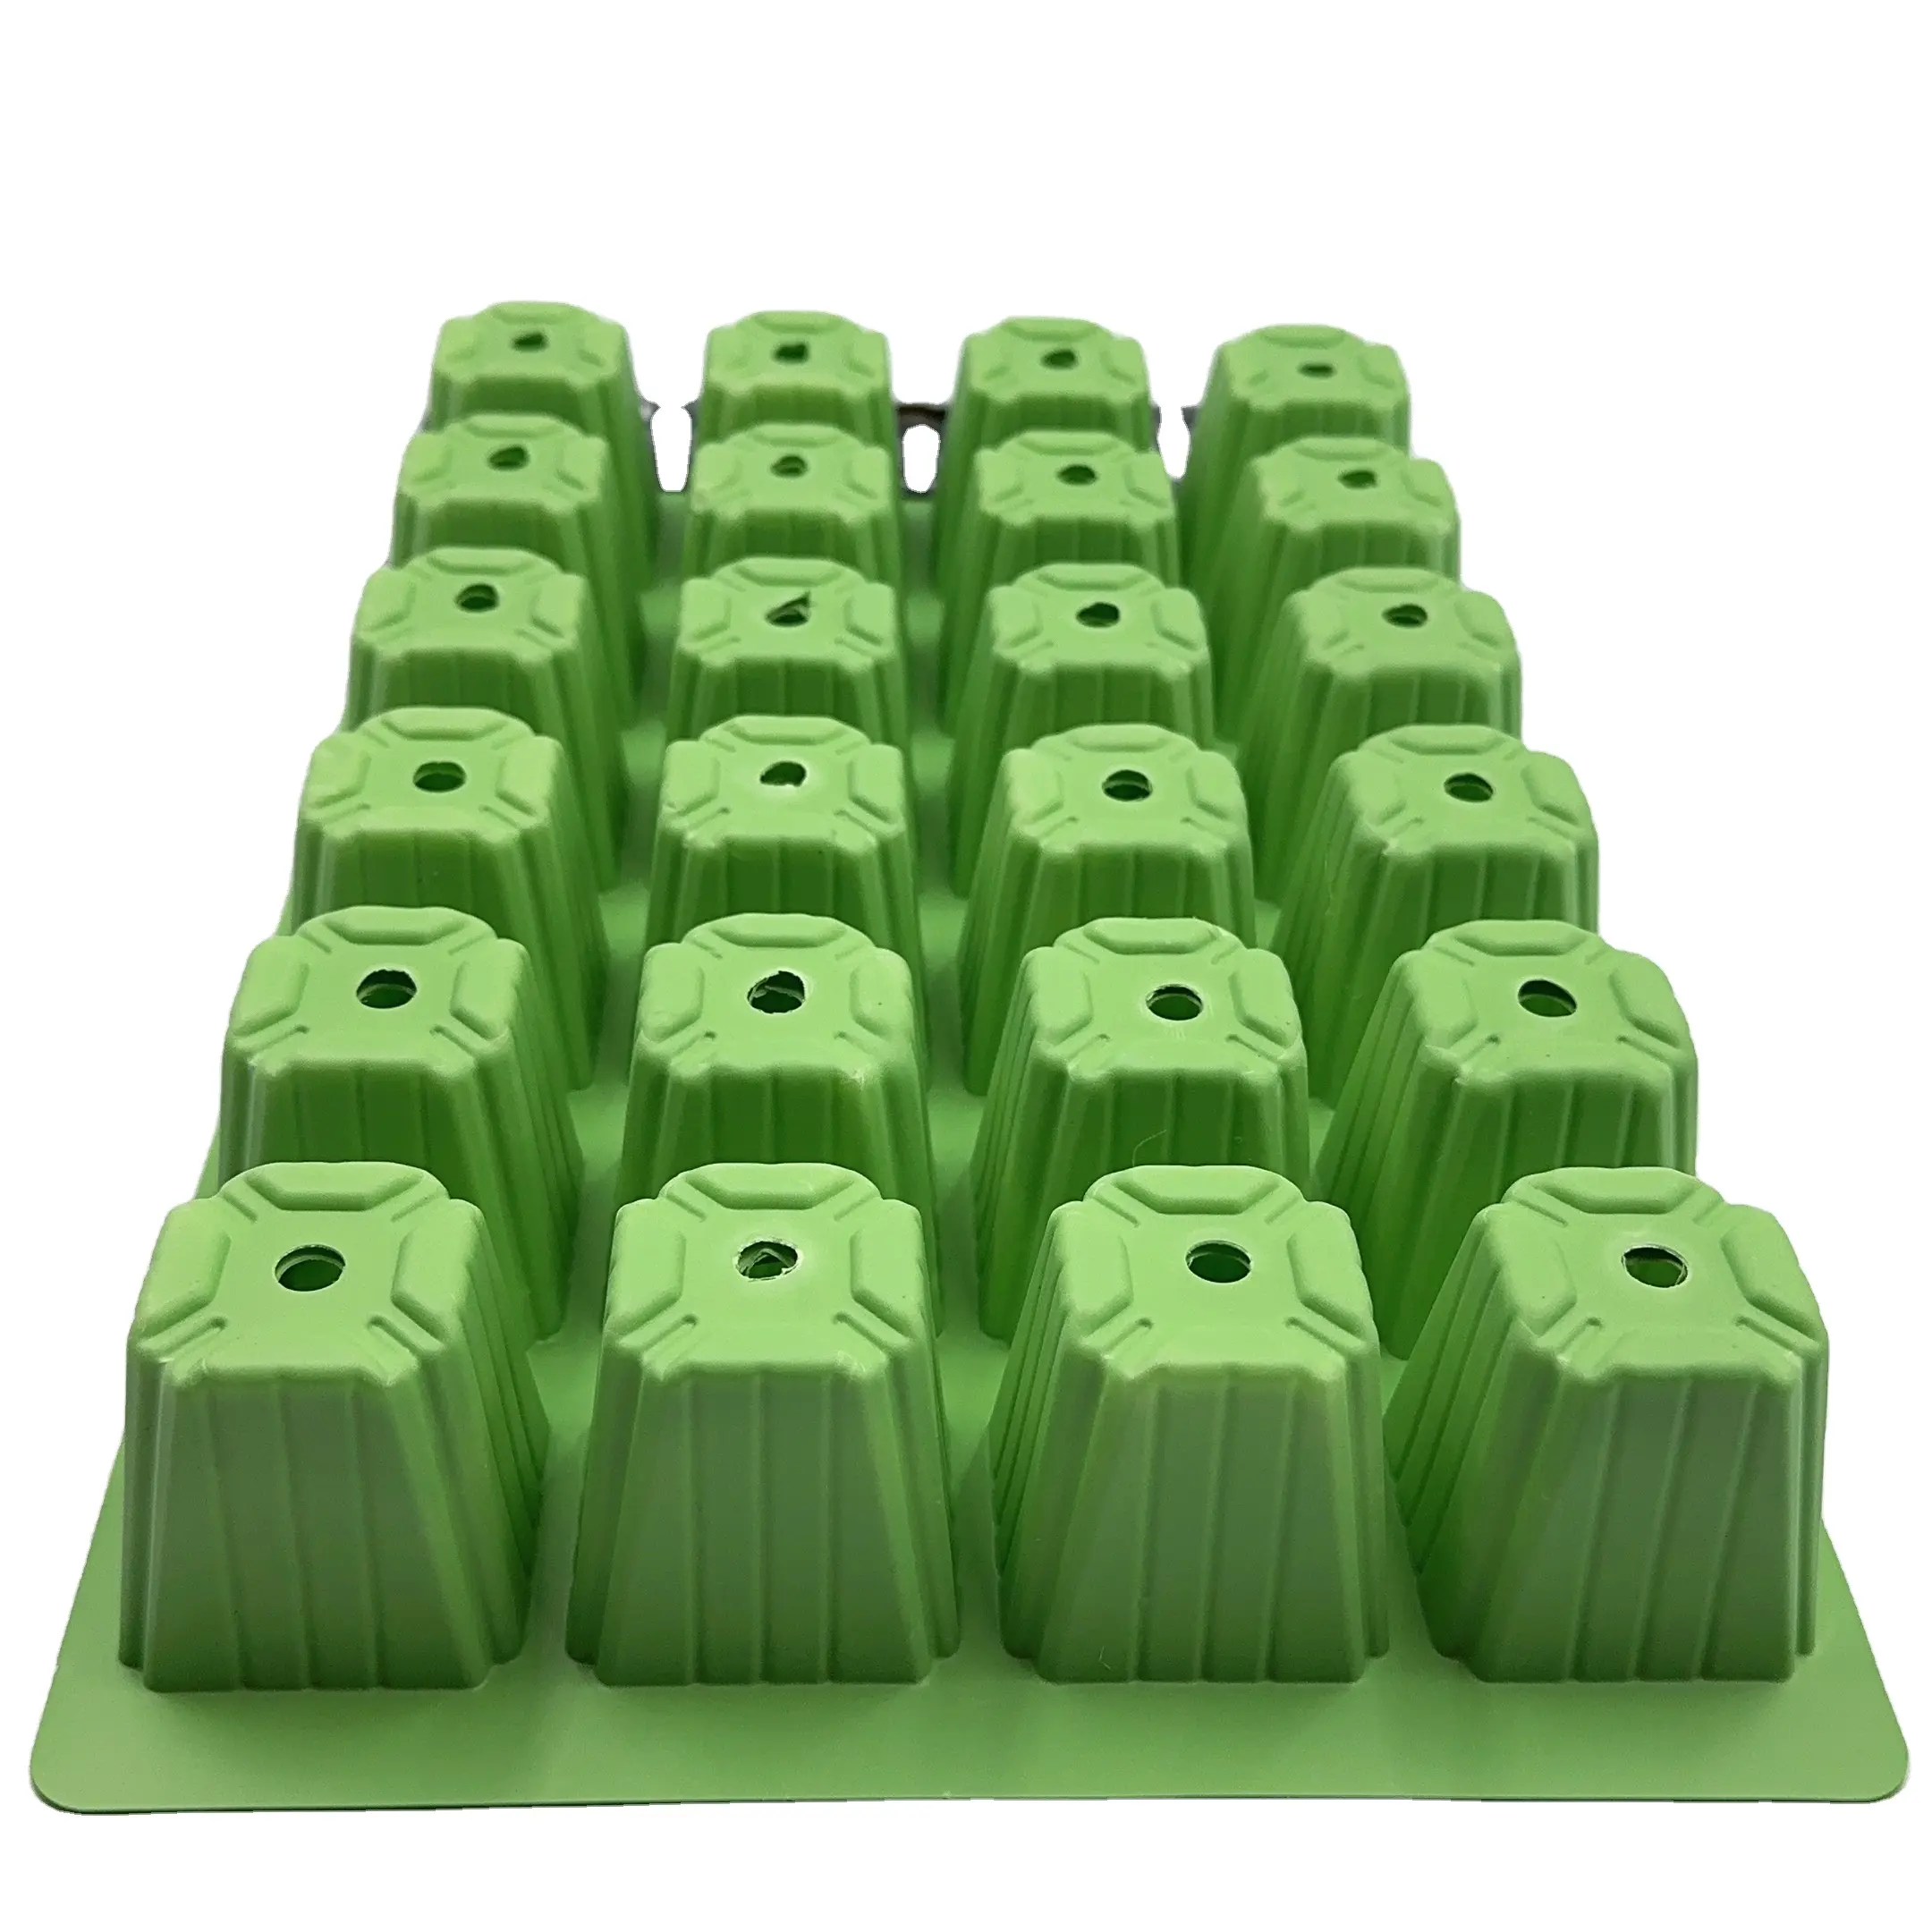 Hot-Selling Nieuwe Hoogwaardige 24-Grid Groene Zaailing Lade Vierkante Plastic Lade